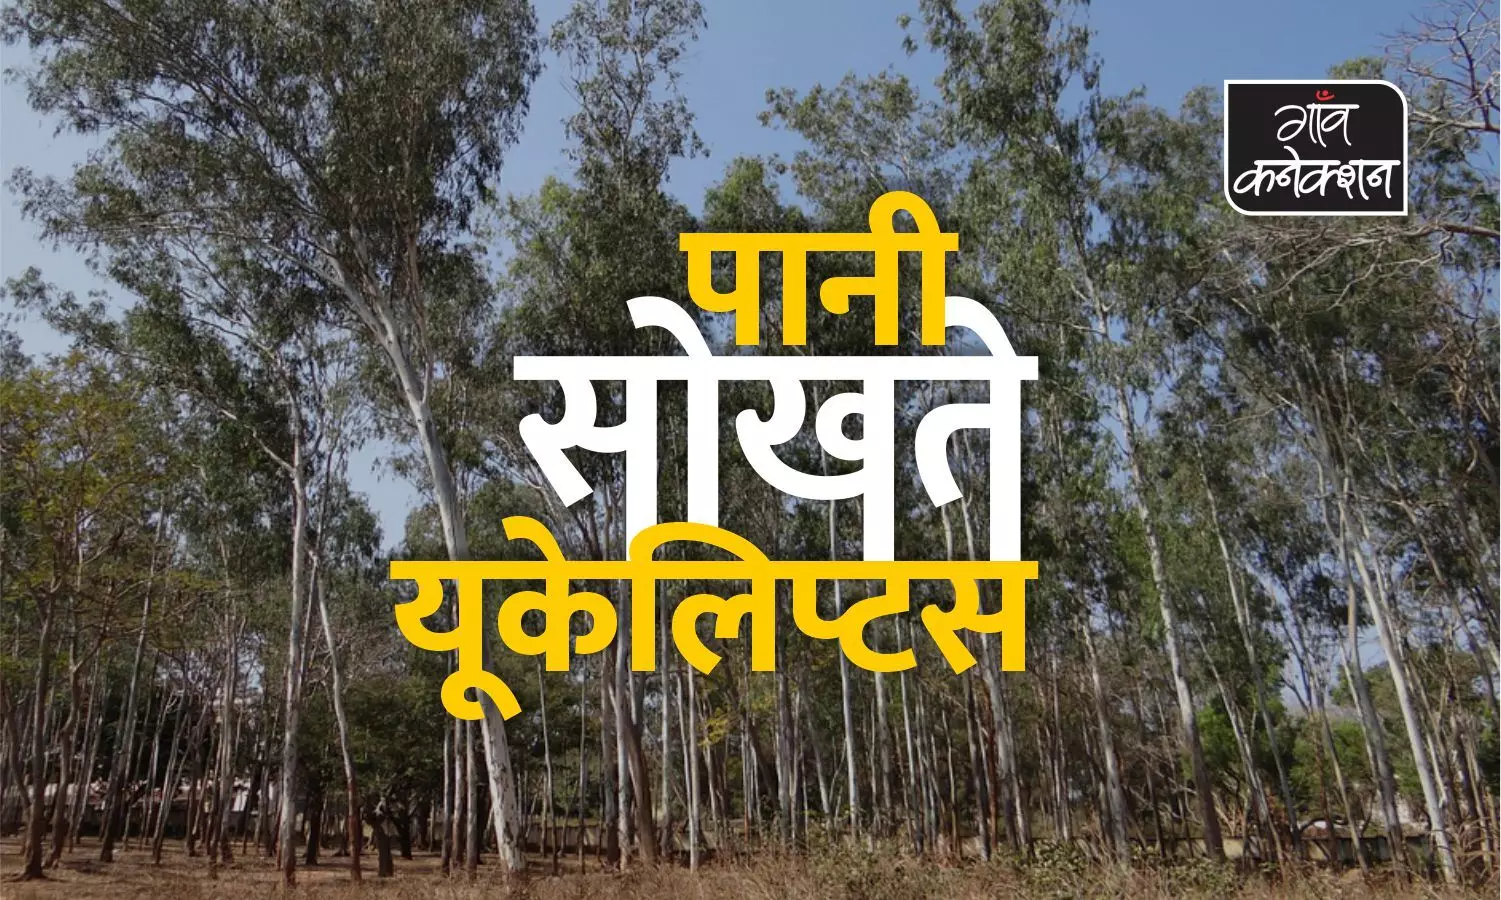 यूपी सरकार लगवा रही पानी सोखने वाले पेड़, कर्नाटक ने किया है इसे बैन